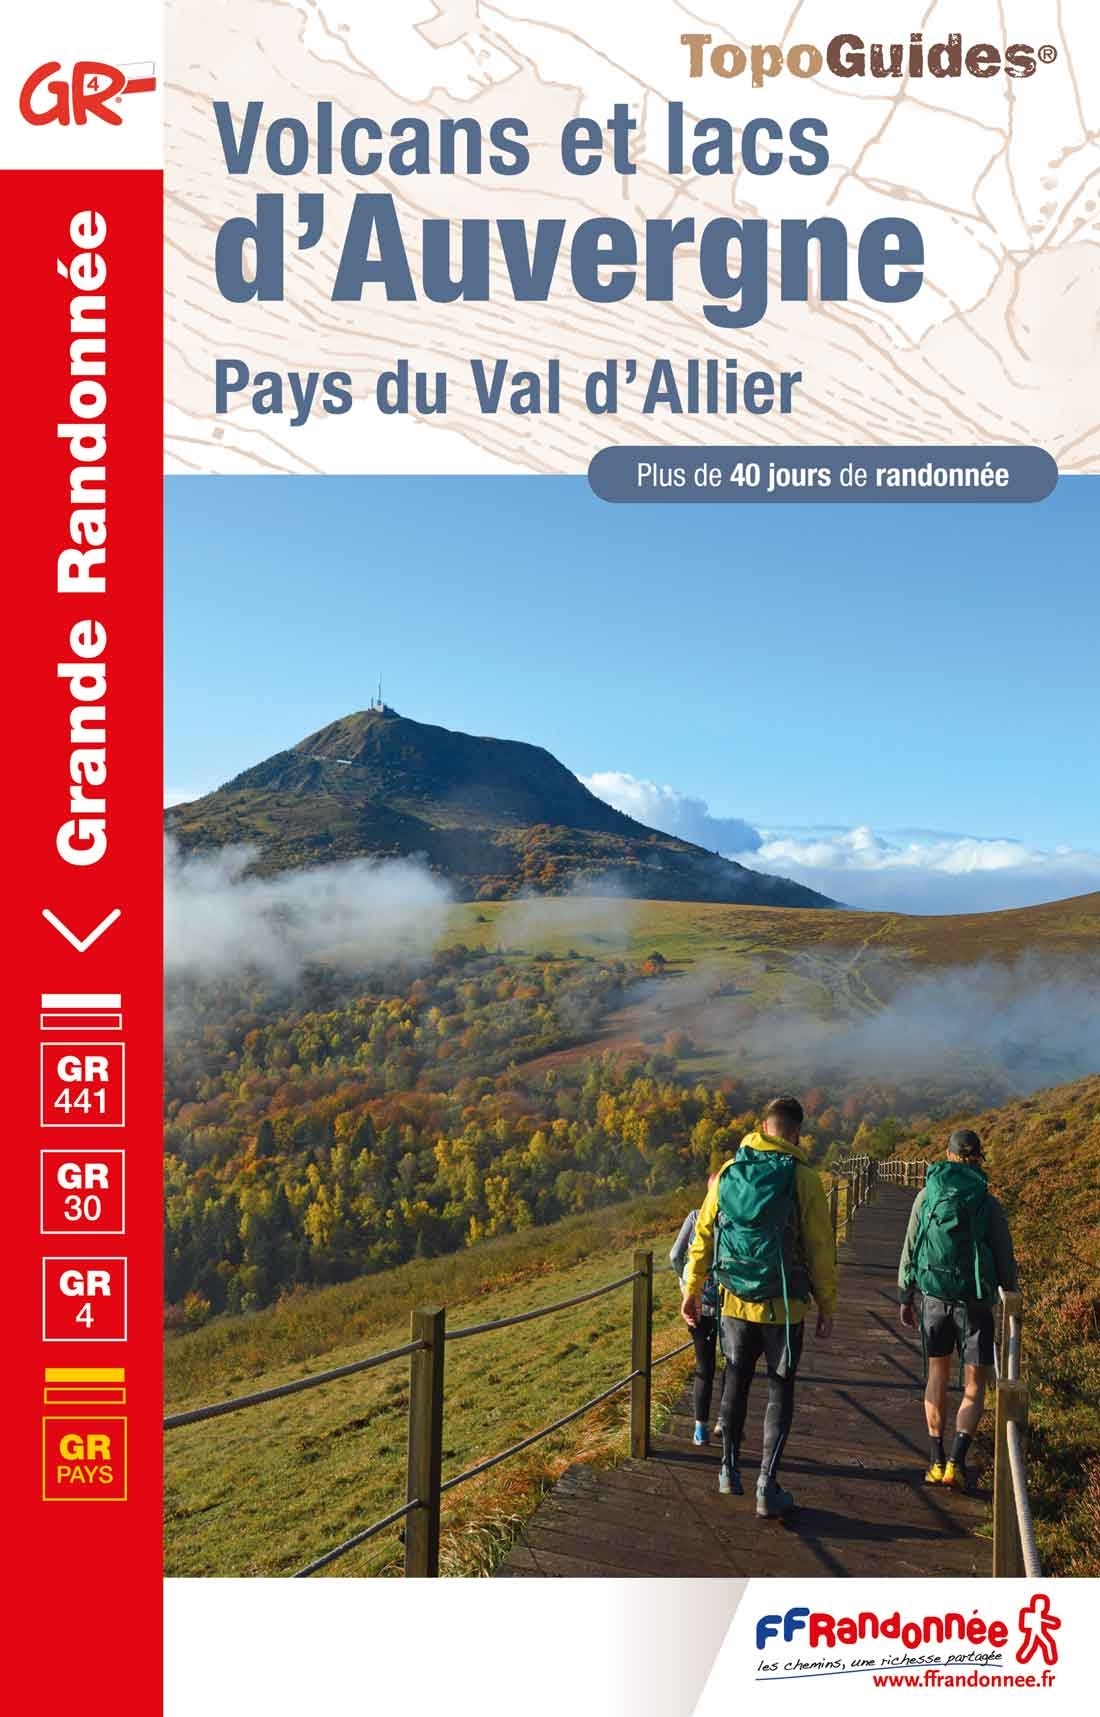 Topoguide FFRandonnée GR 4 - Volcans et lacs d'Auvergne